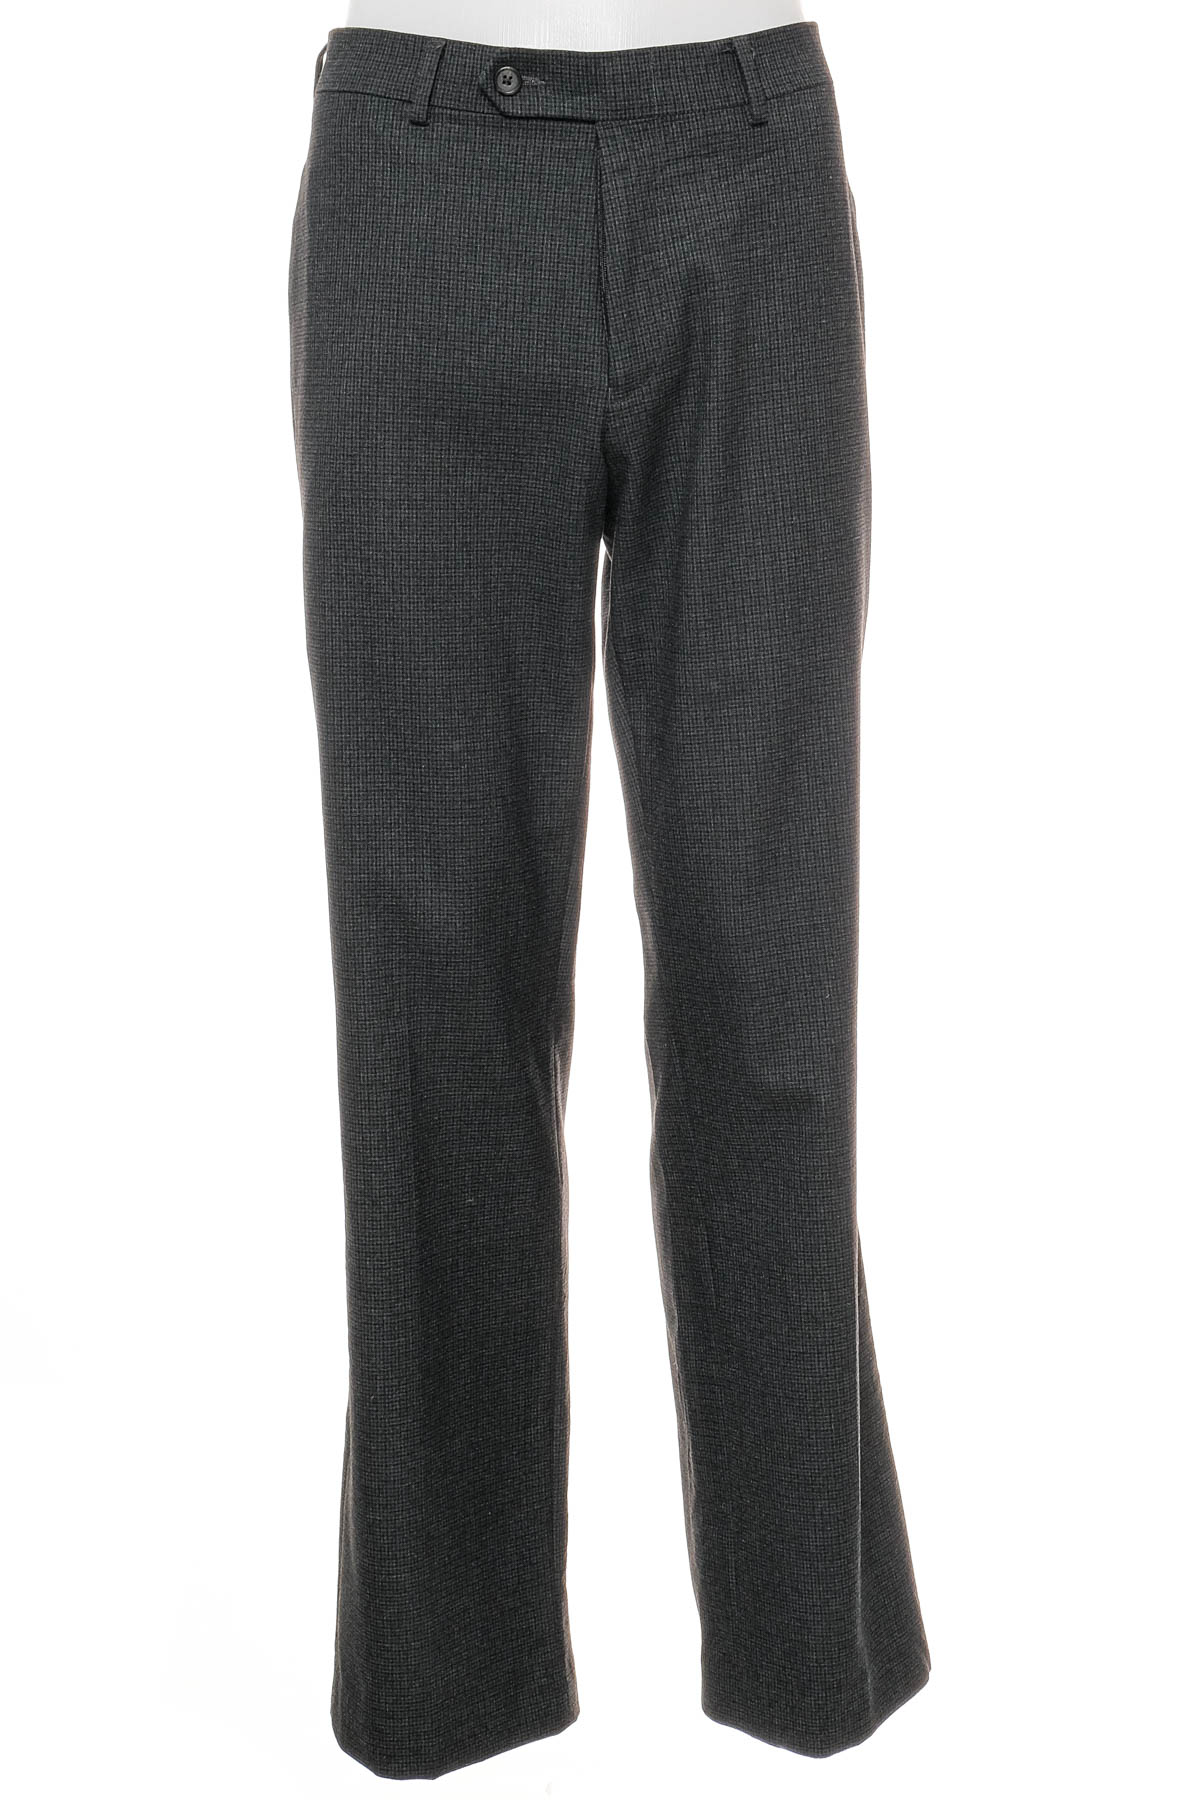 Men's trousers - Ralph Lauren - 0